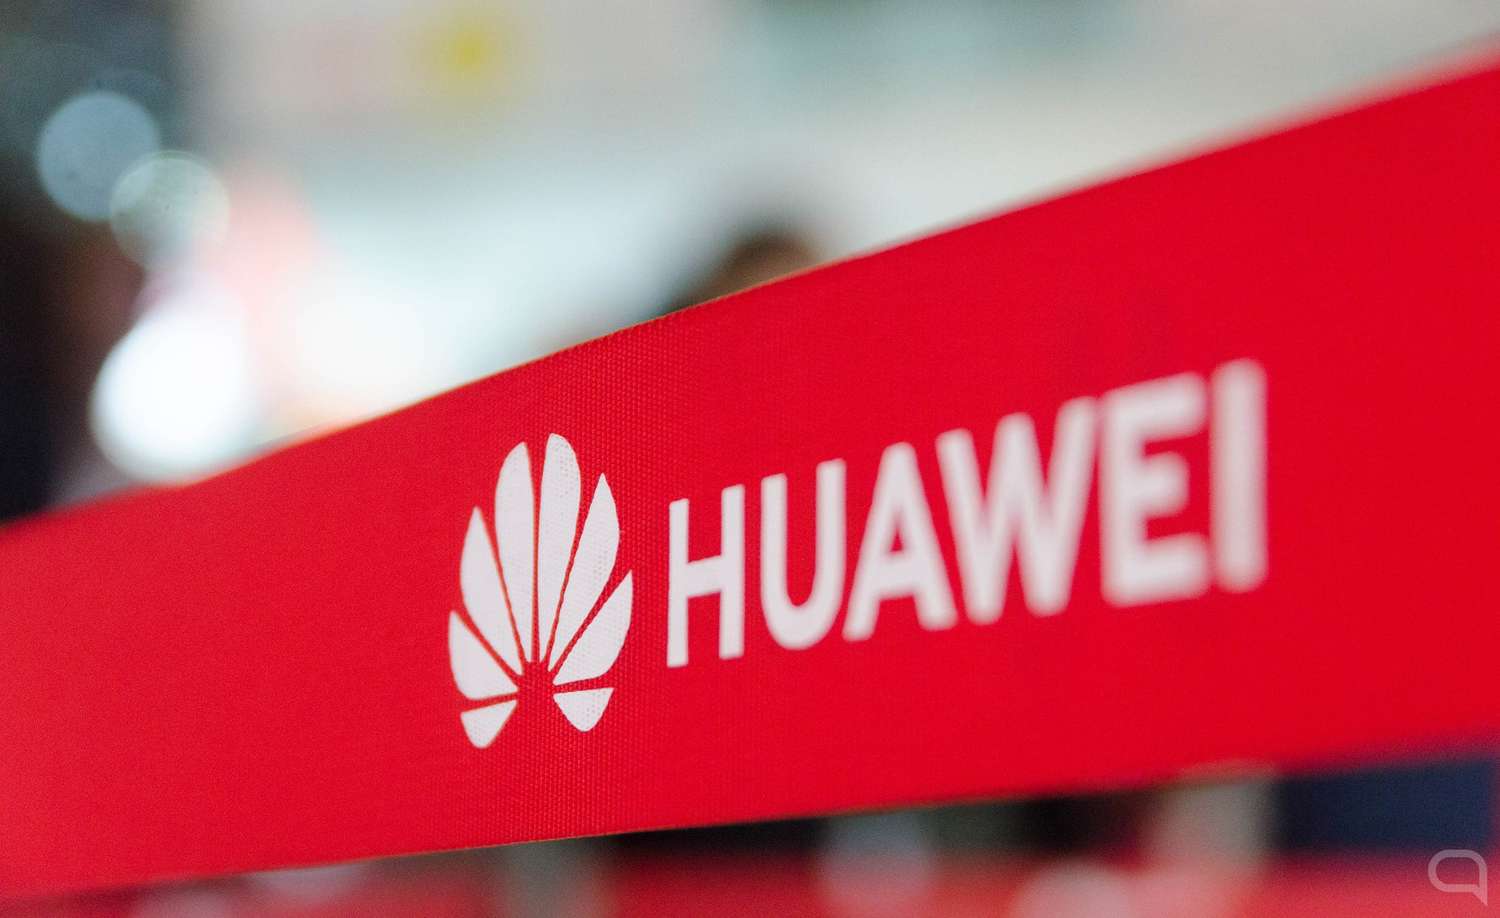 Inglaterra prohibe equipos Huawei en su red de telecomunicaciones 5G